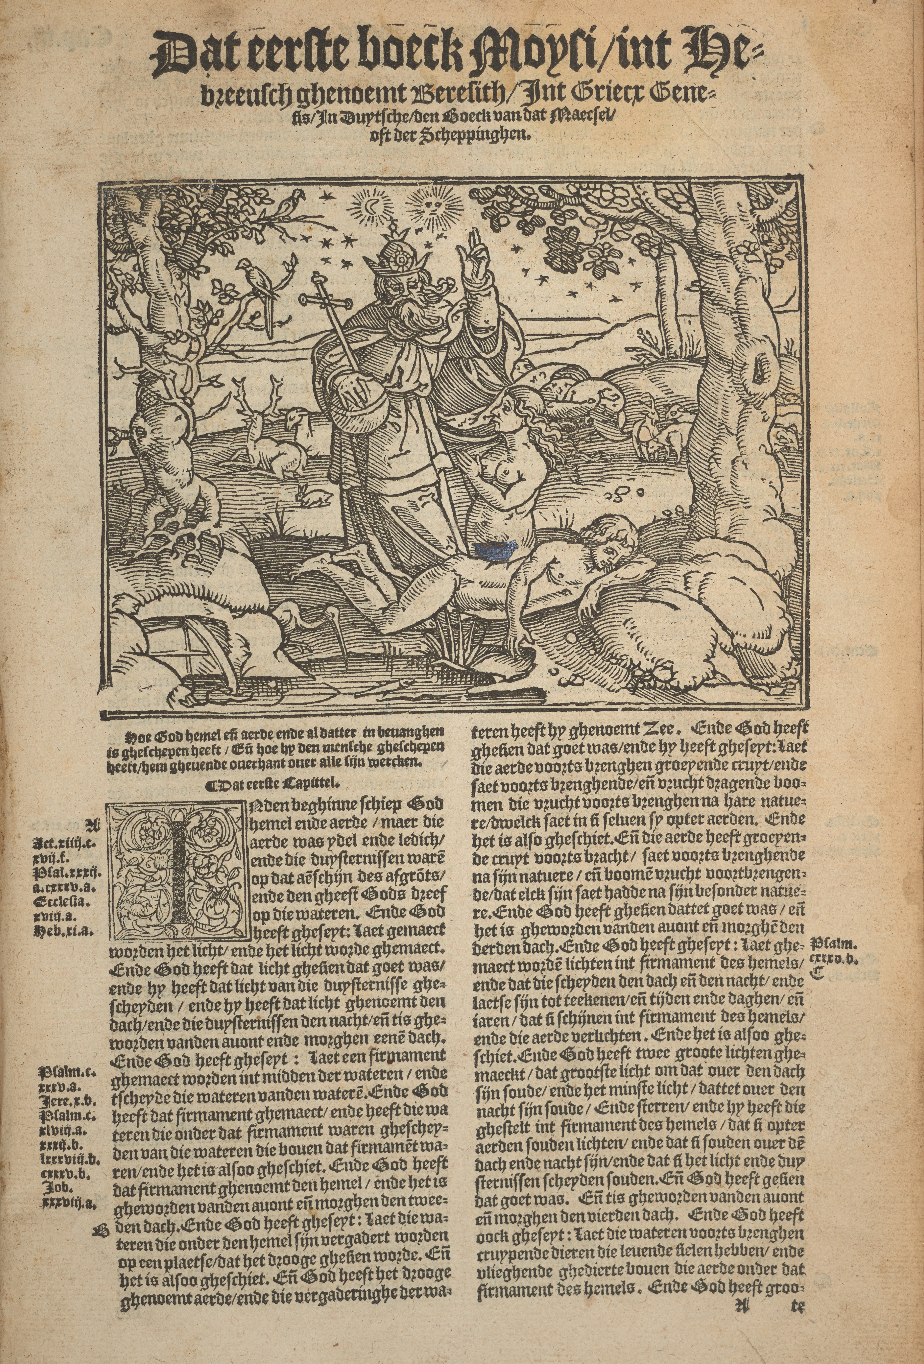 Detail from De bibel inhoudende het Oude ende Nyeuwe Testament, 1560. Evans Bible Collection. Folio BS224 1560.